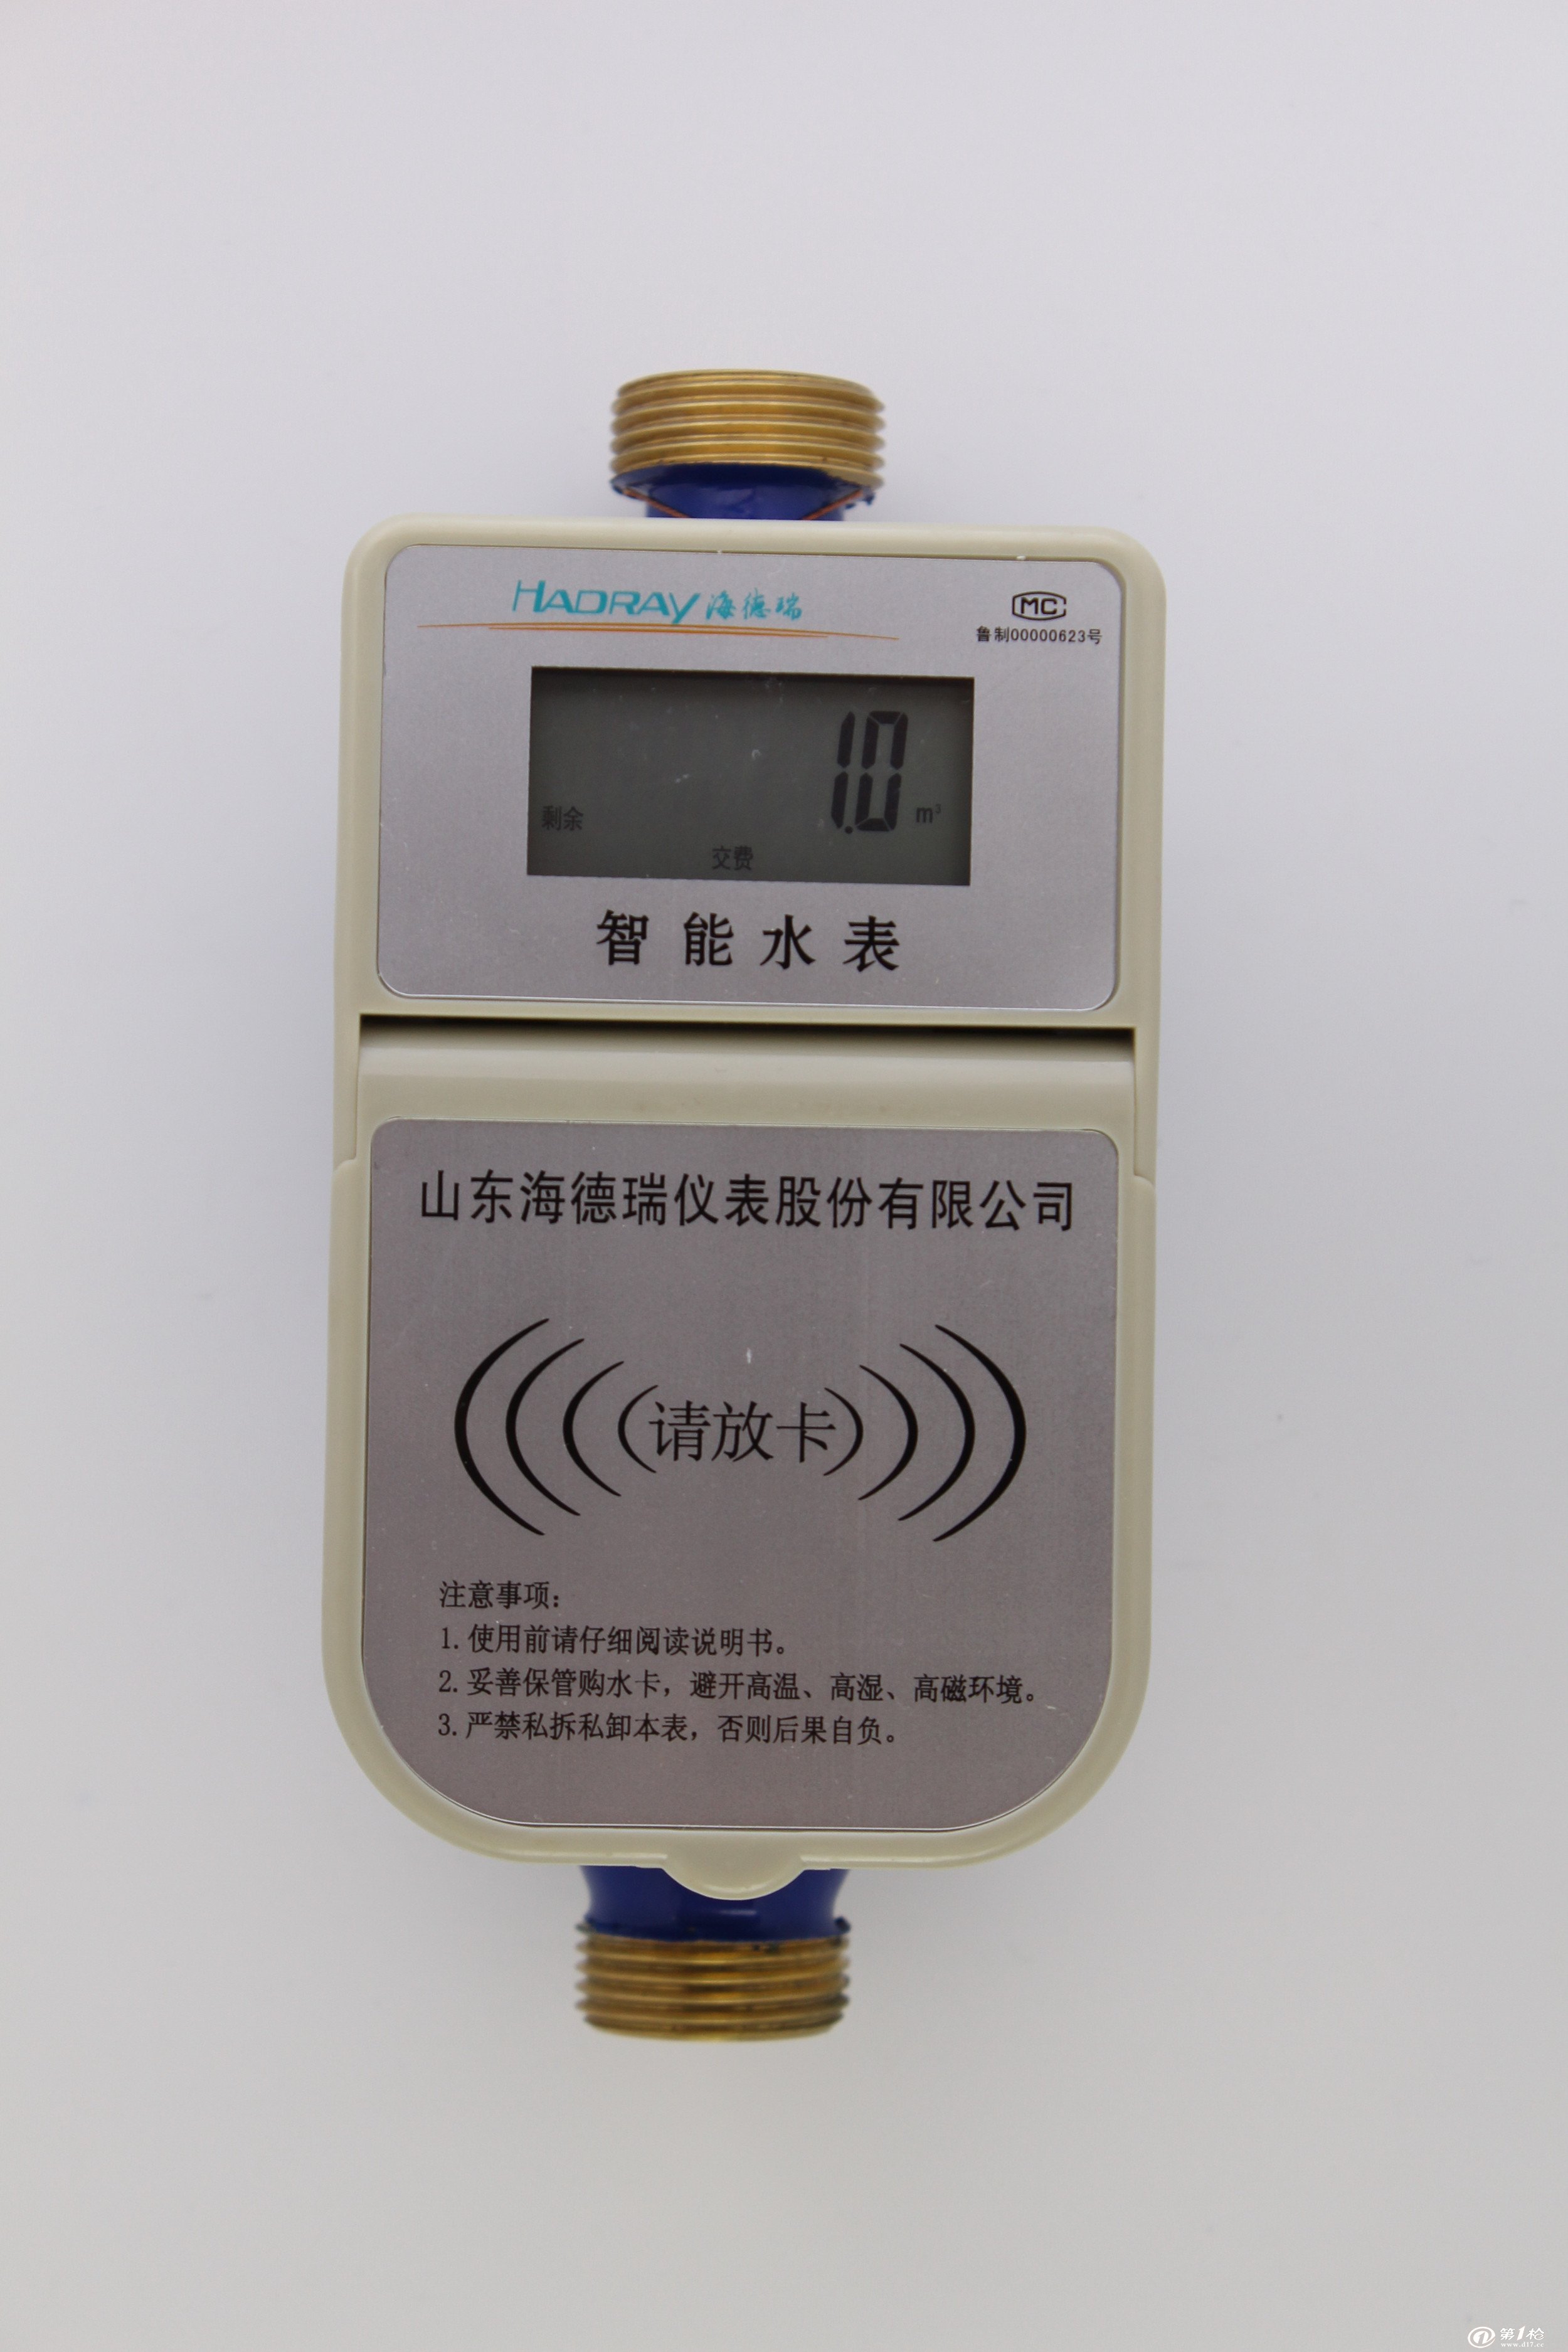 水表厂家直销 预付费水表 射频ic卡智能水表dn20